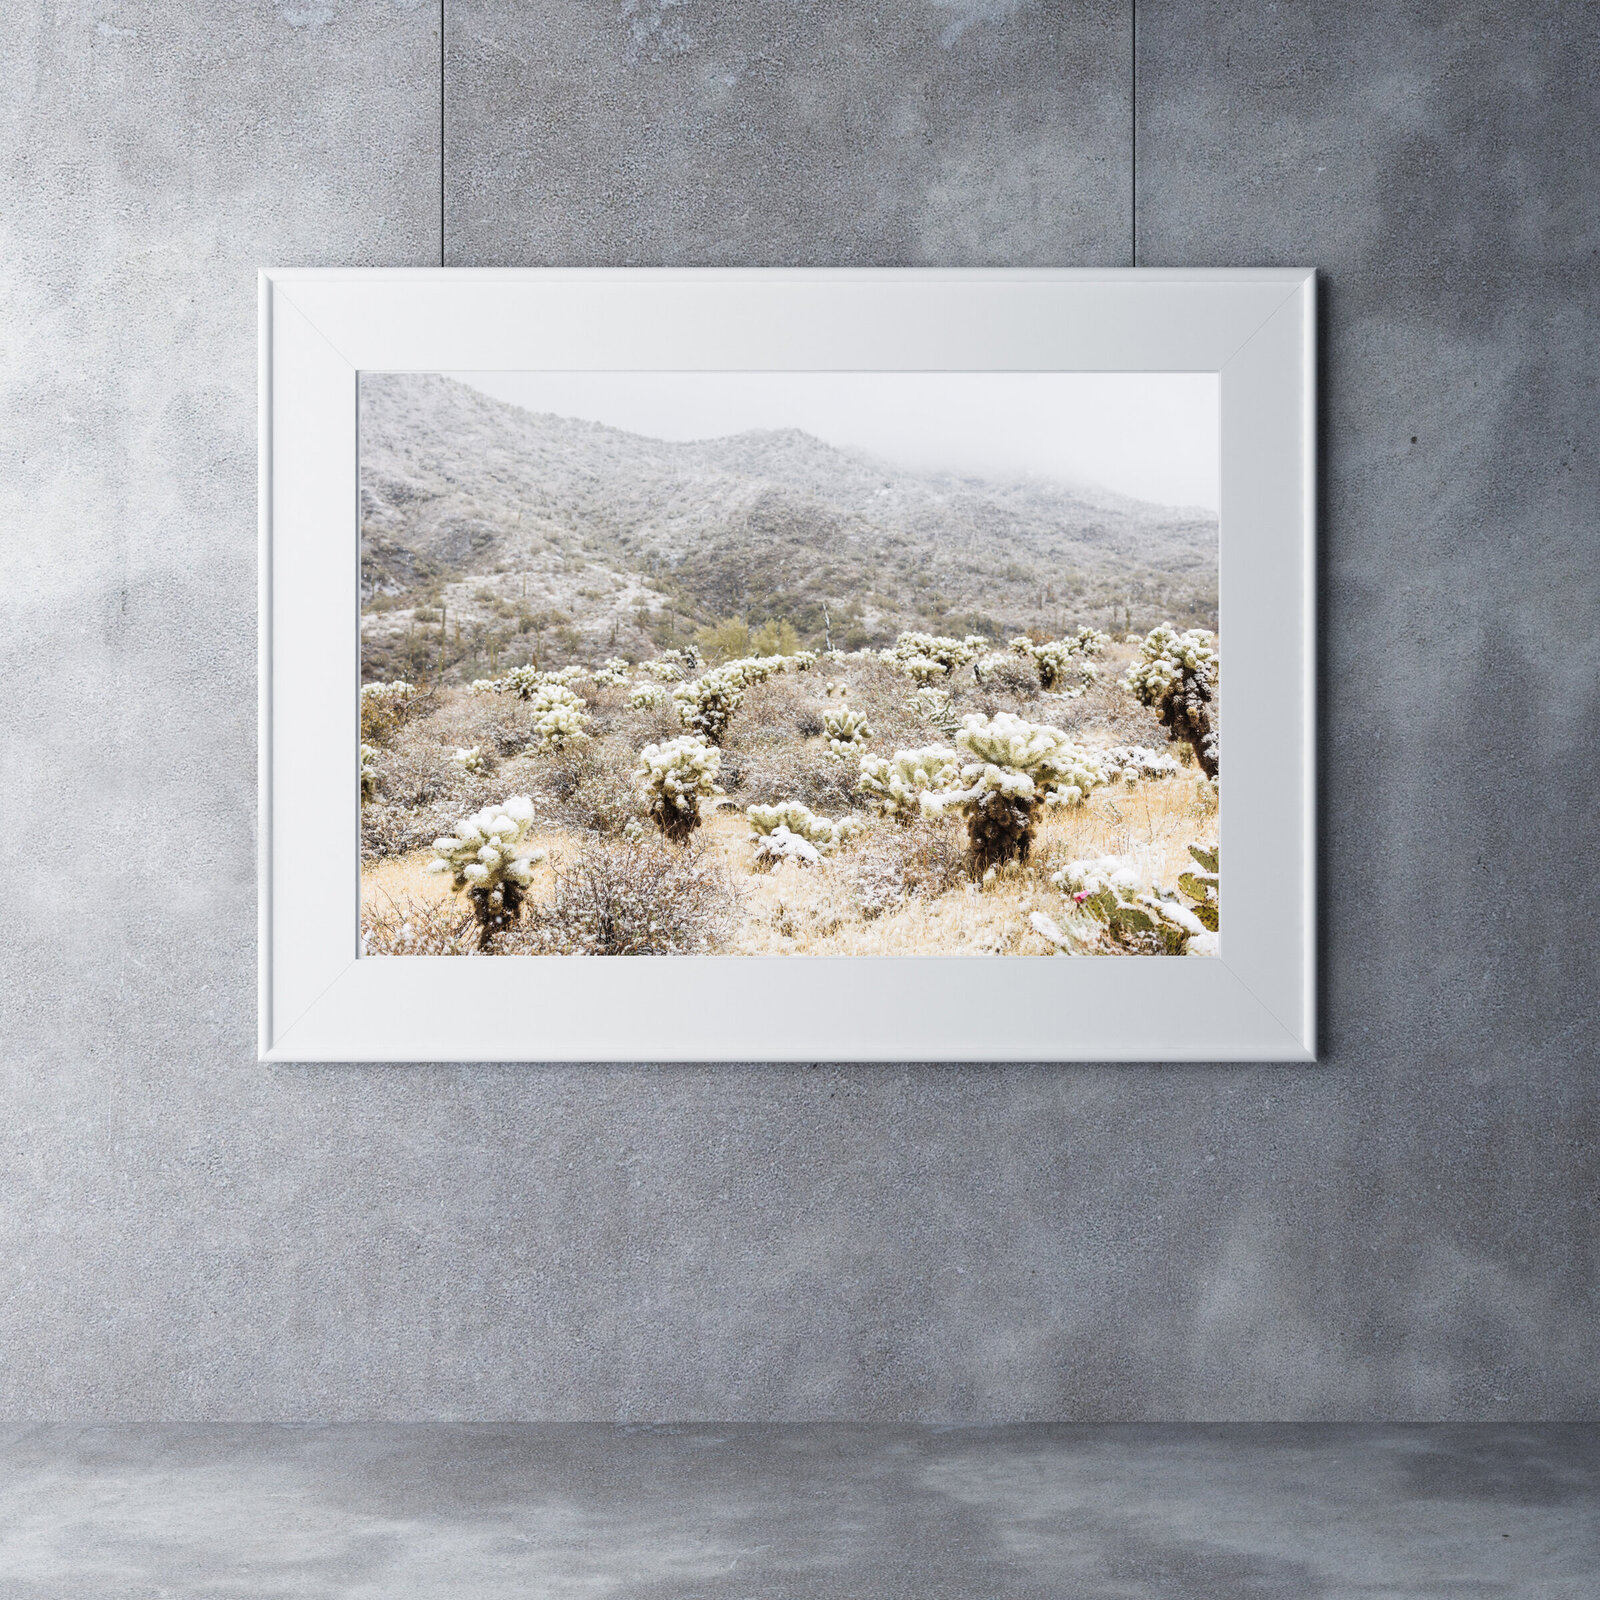 Arizona desert cactus with snow home decor print